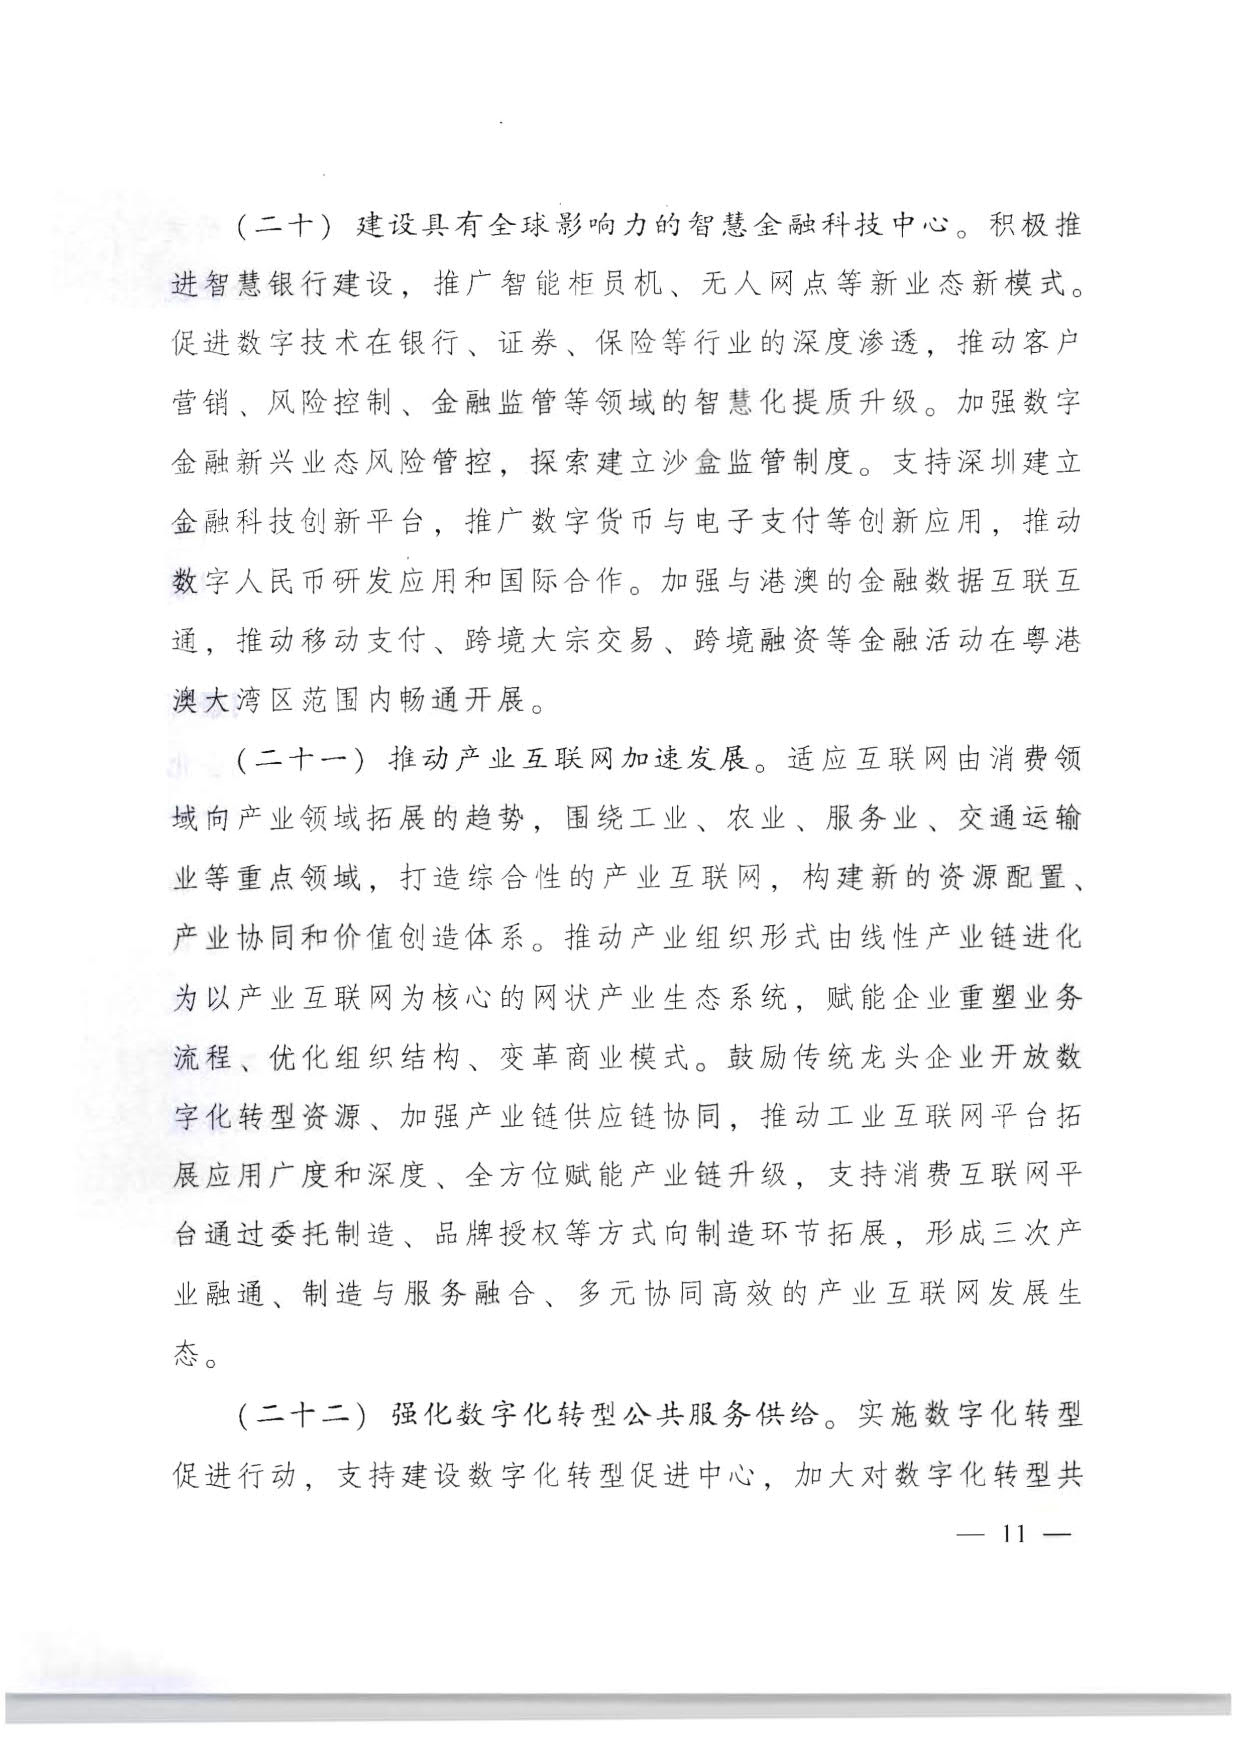 广东省人民政府关于加快数字化发展的意见_11.jpg